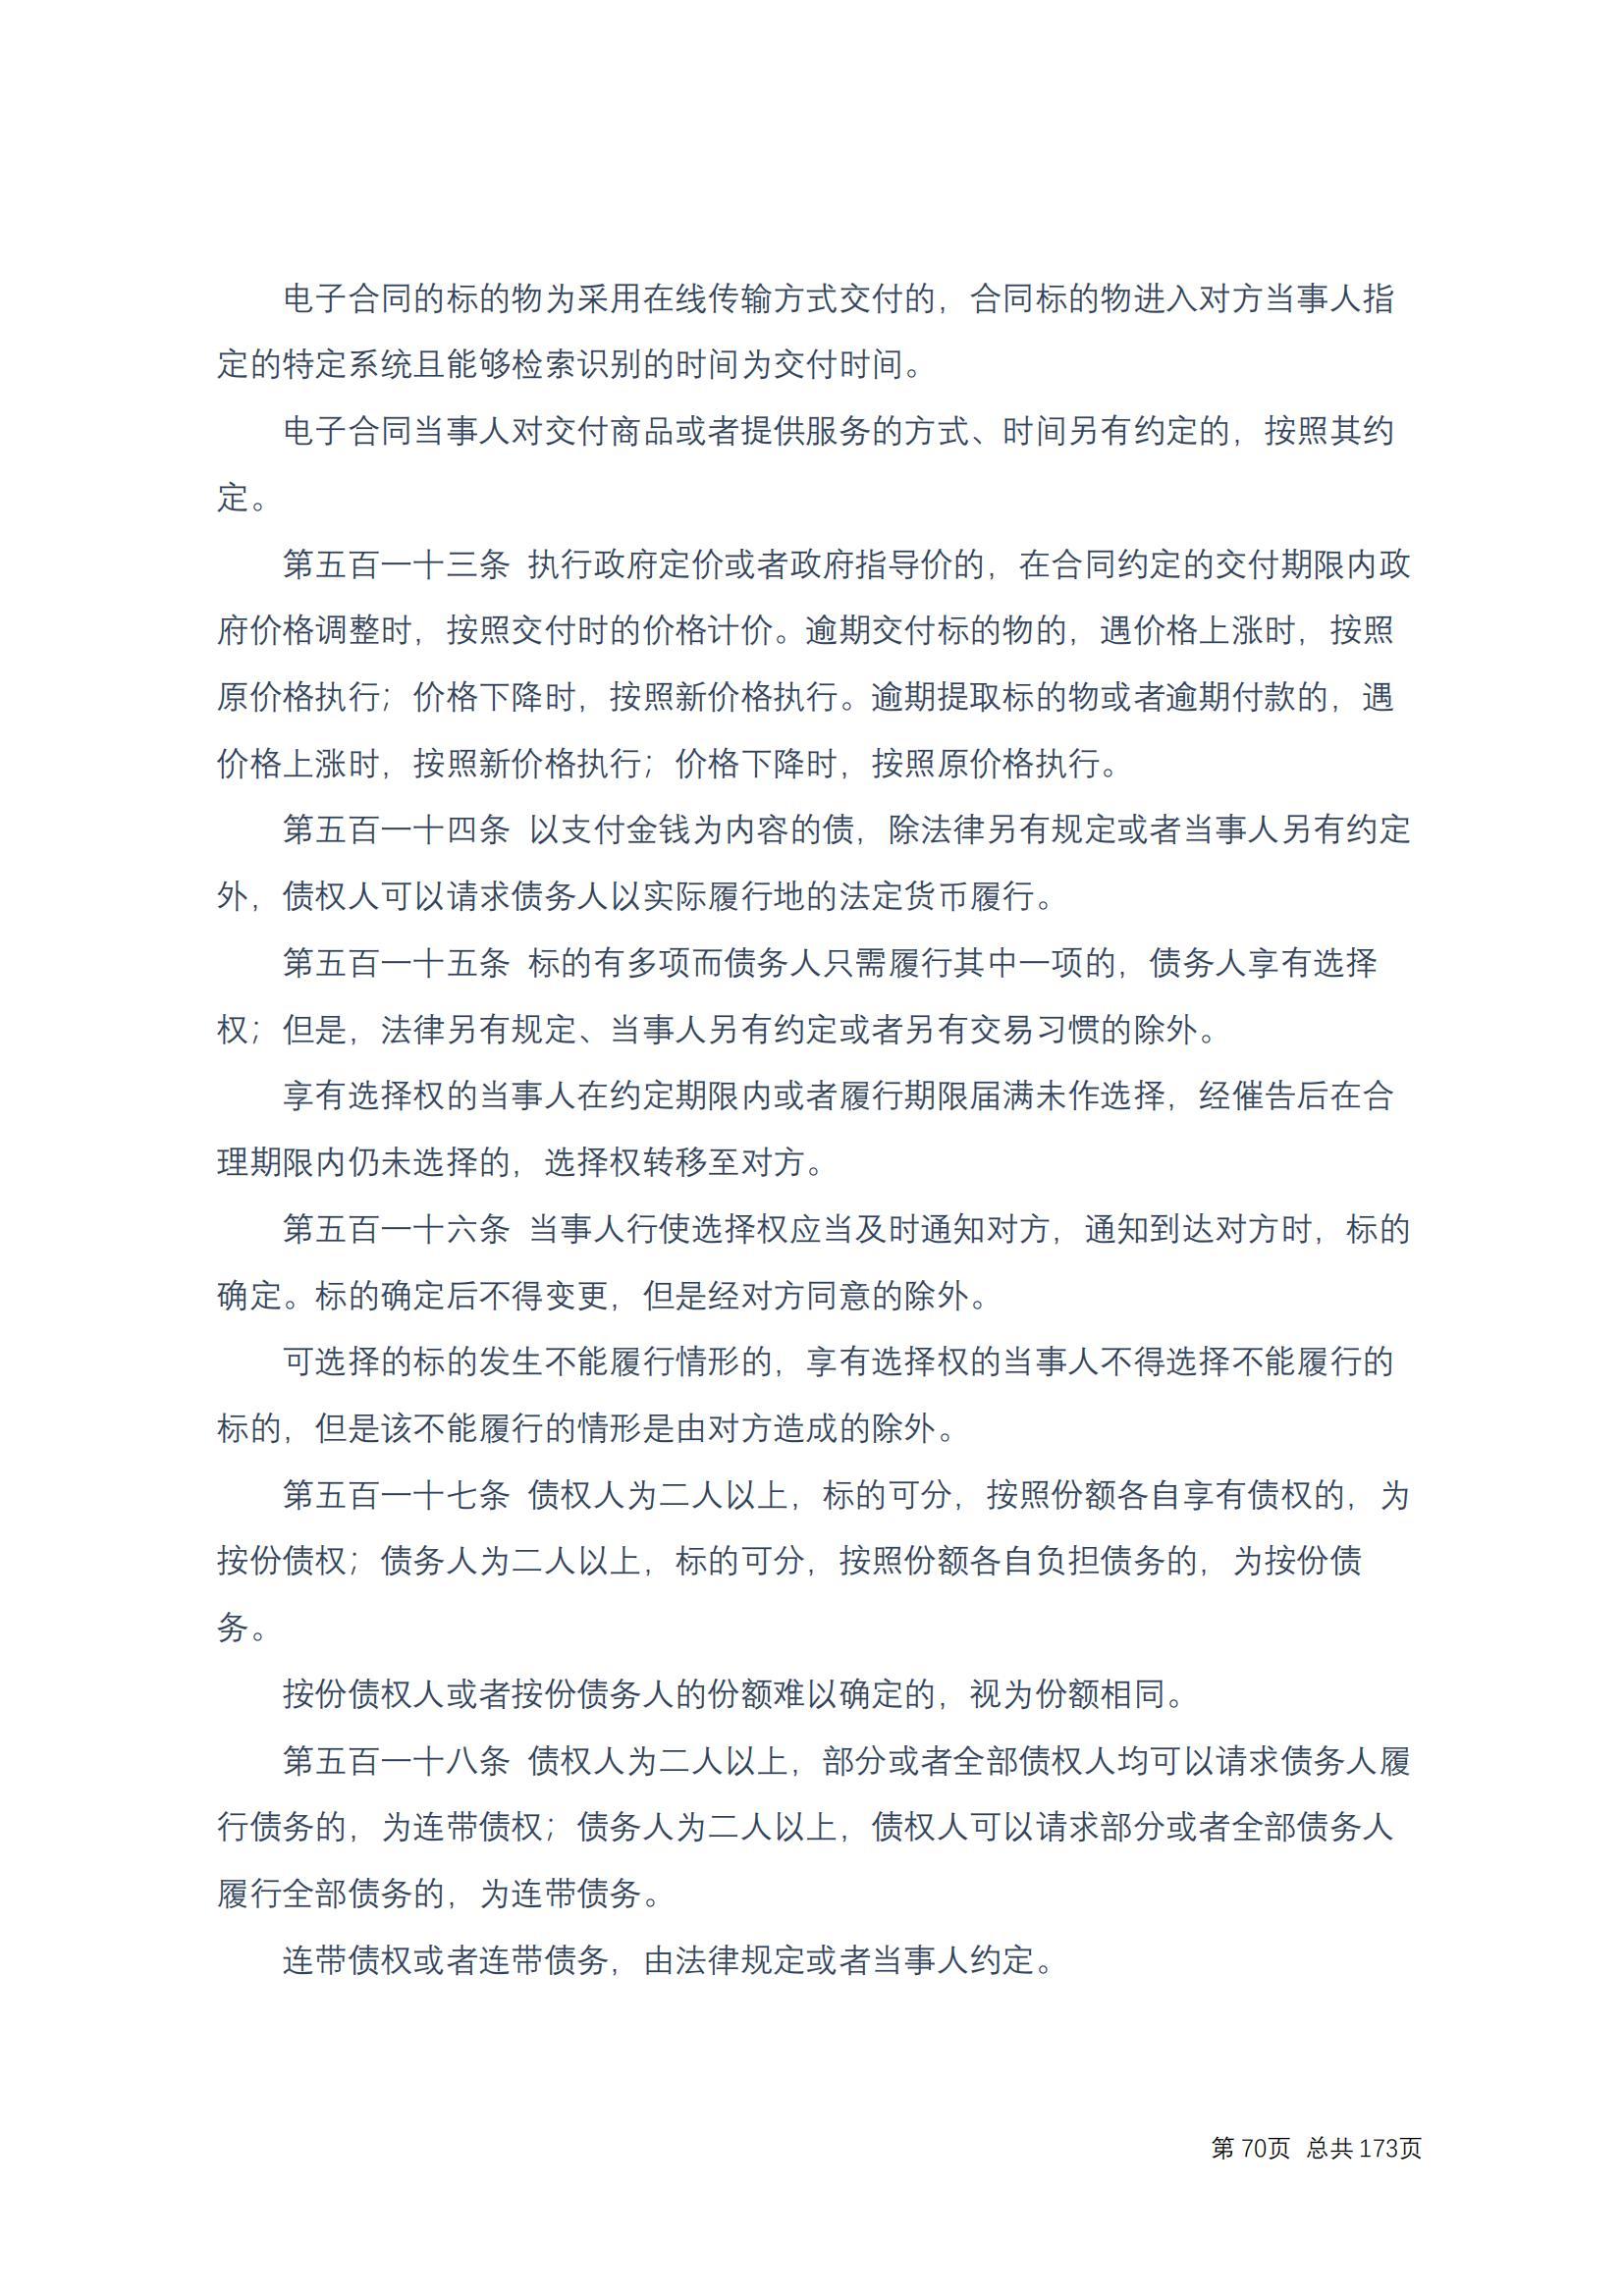 中华人民共和国民法典 修改过_69